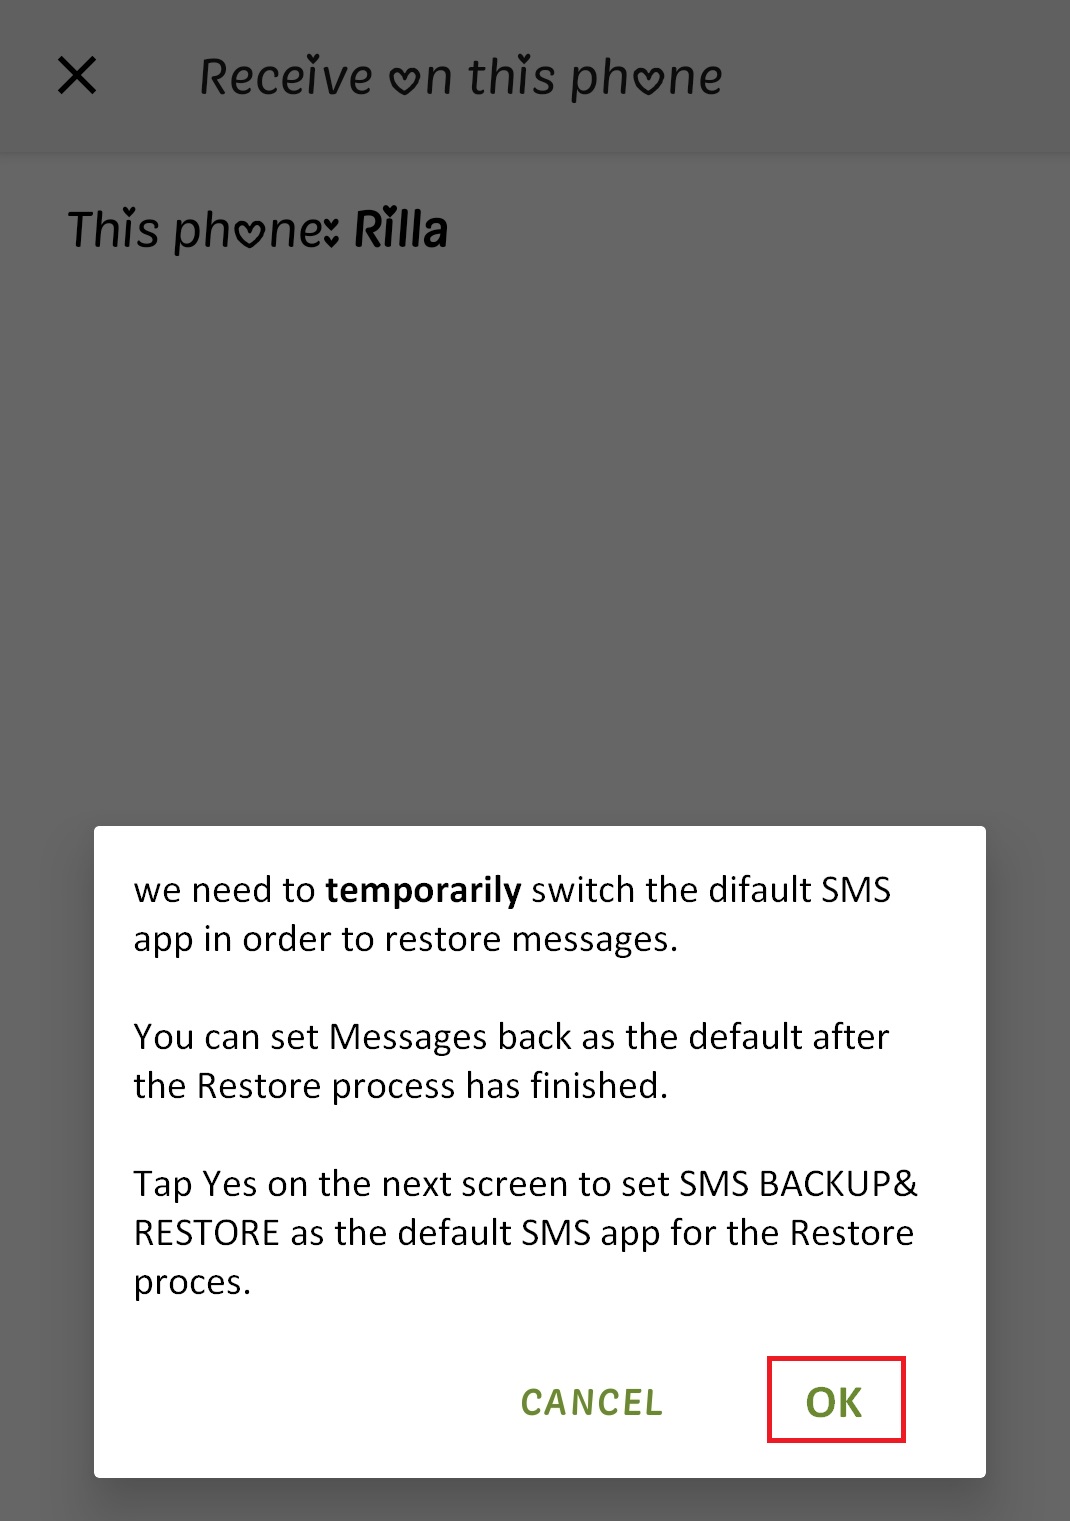 ۵-انتقال پیامک به سایر گوشی های اندرویدی با برنامه SMS Backup & Restore 